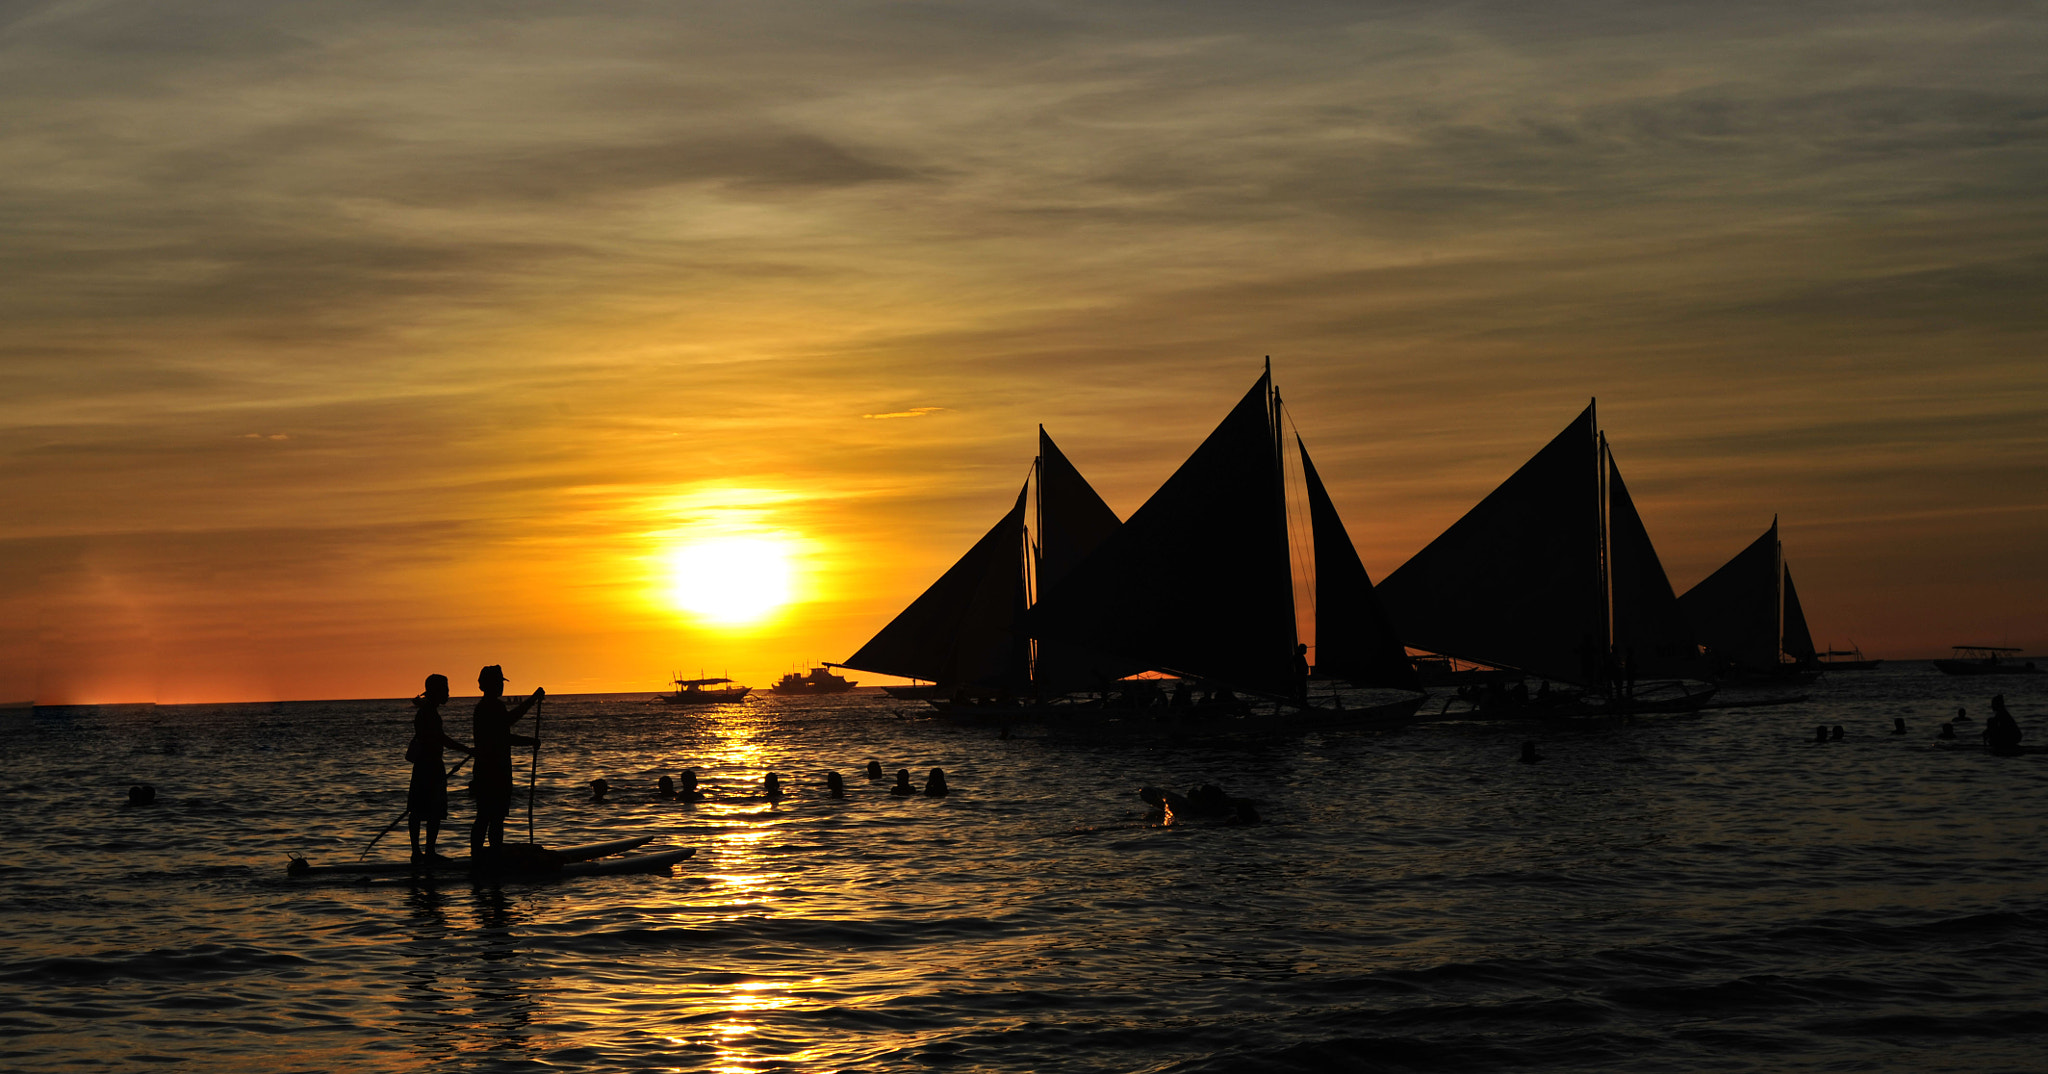 Nikon D700 sample photo. Boracay sunset photography